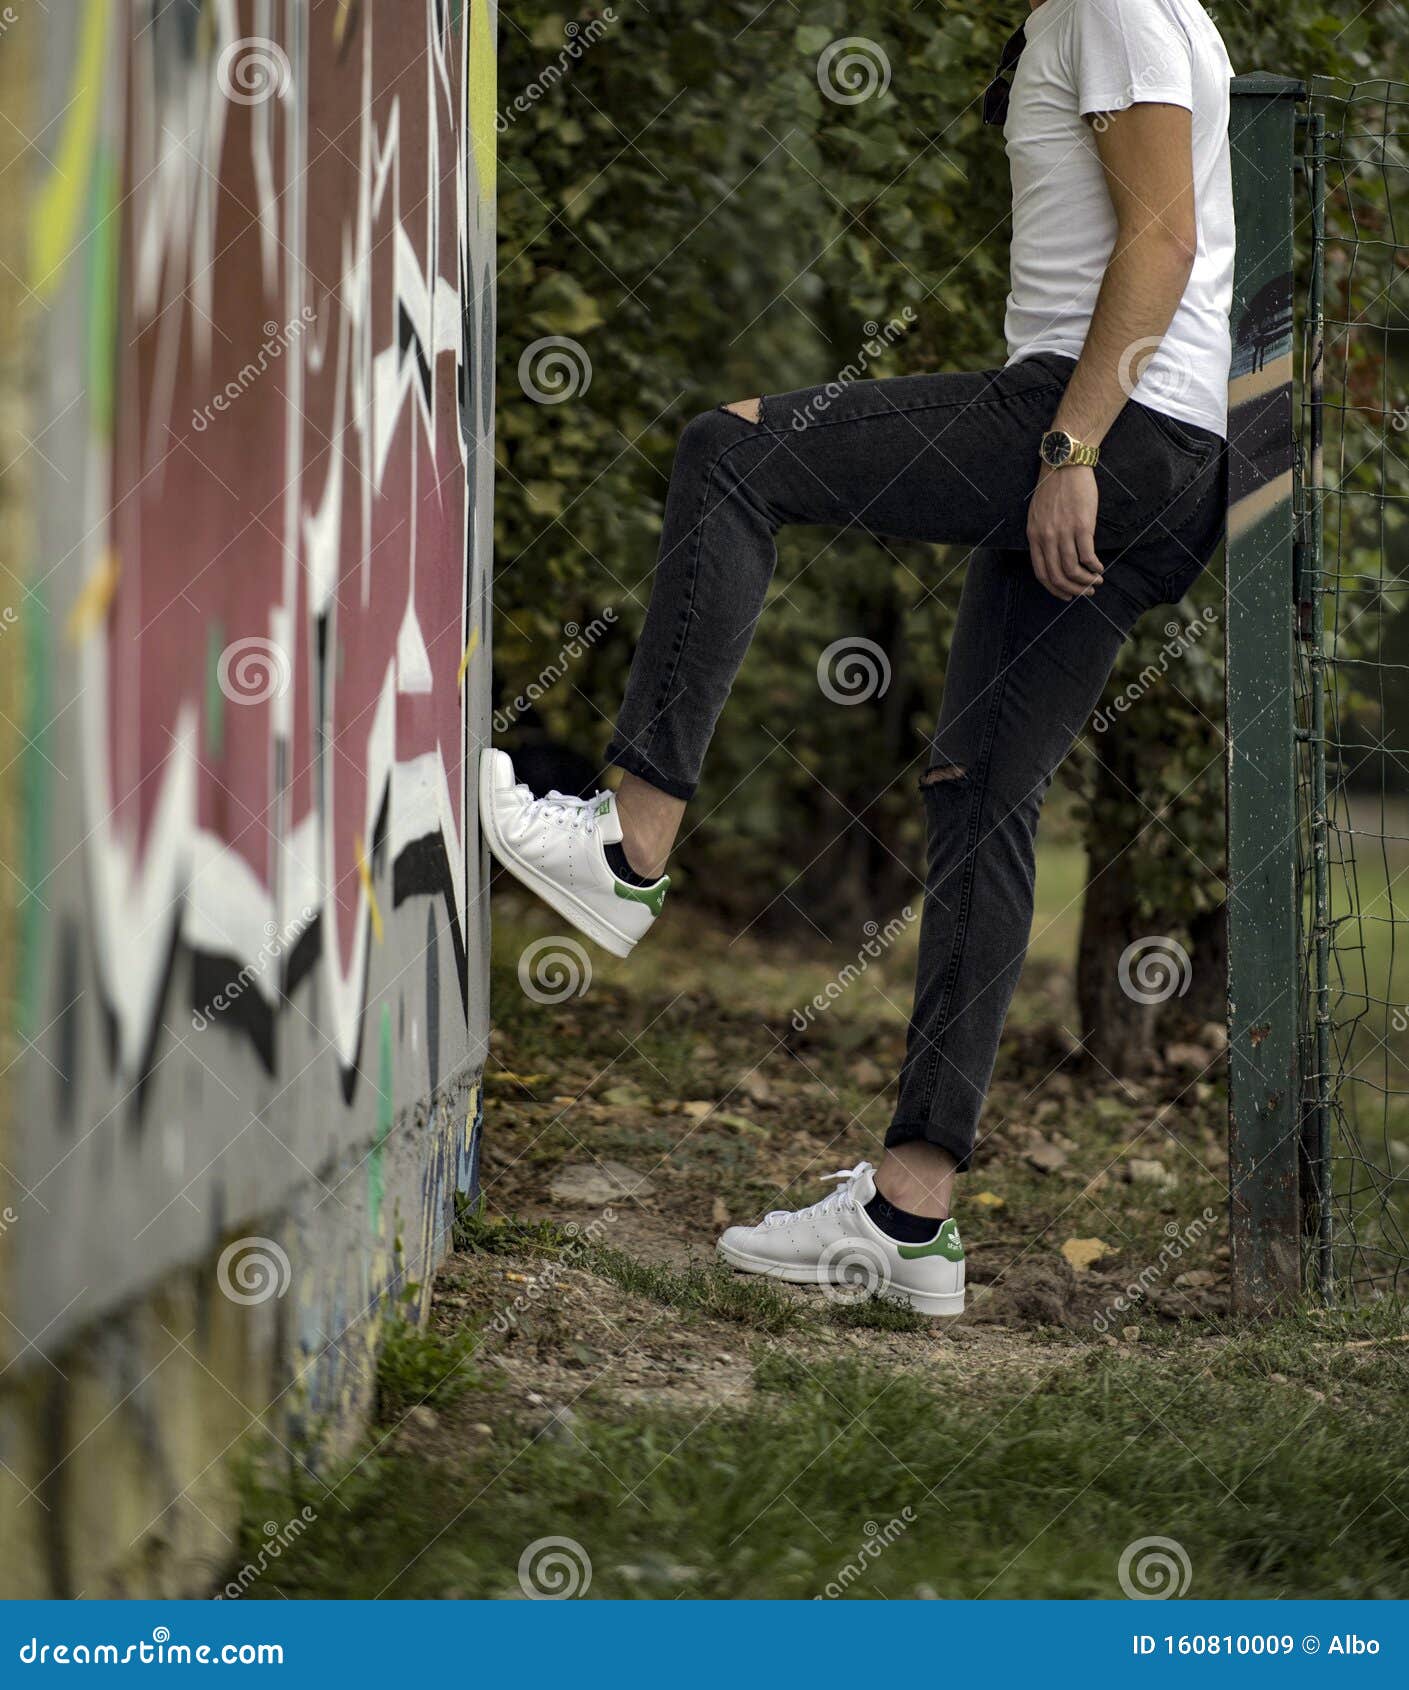 Joven Llevando Zapatos Adidas Stan Smith En Calle de archivo editorial de ocasional, pies: 160810009